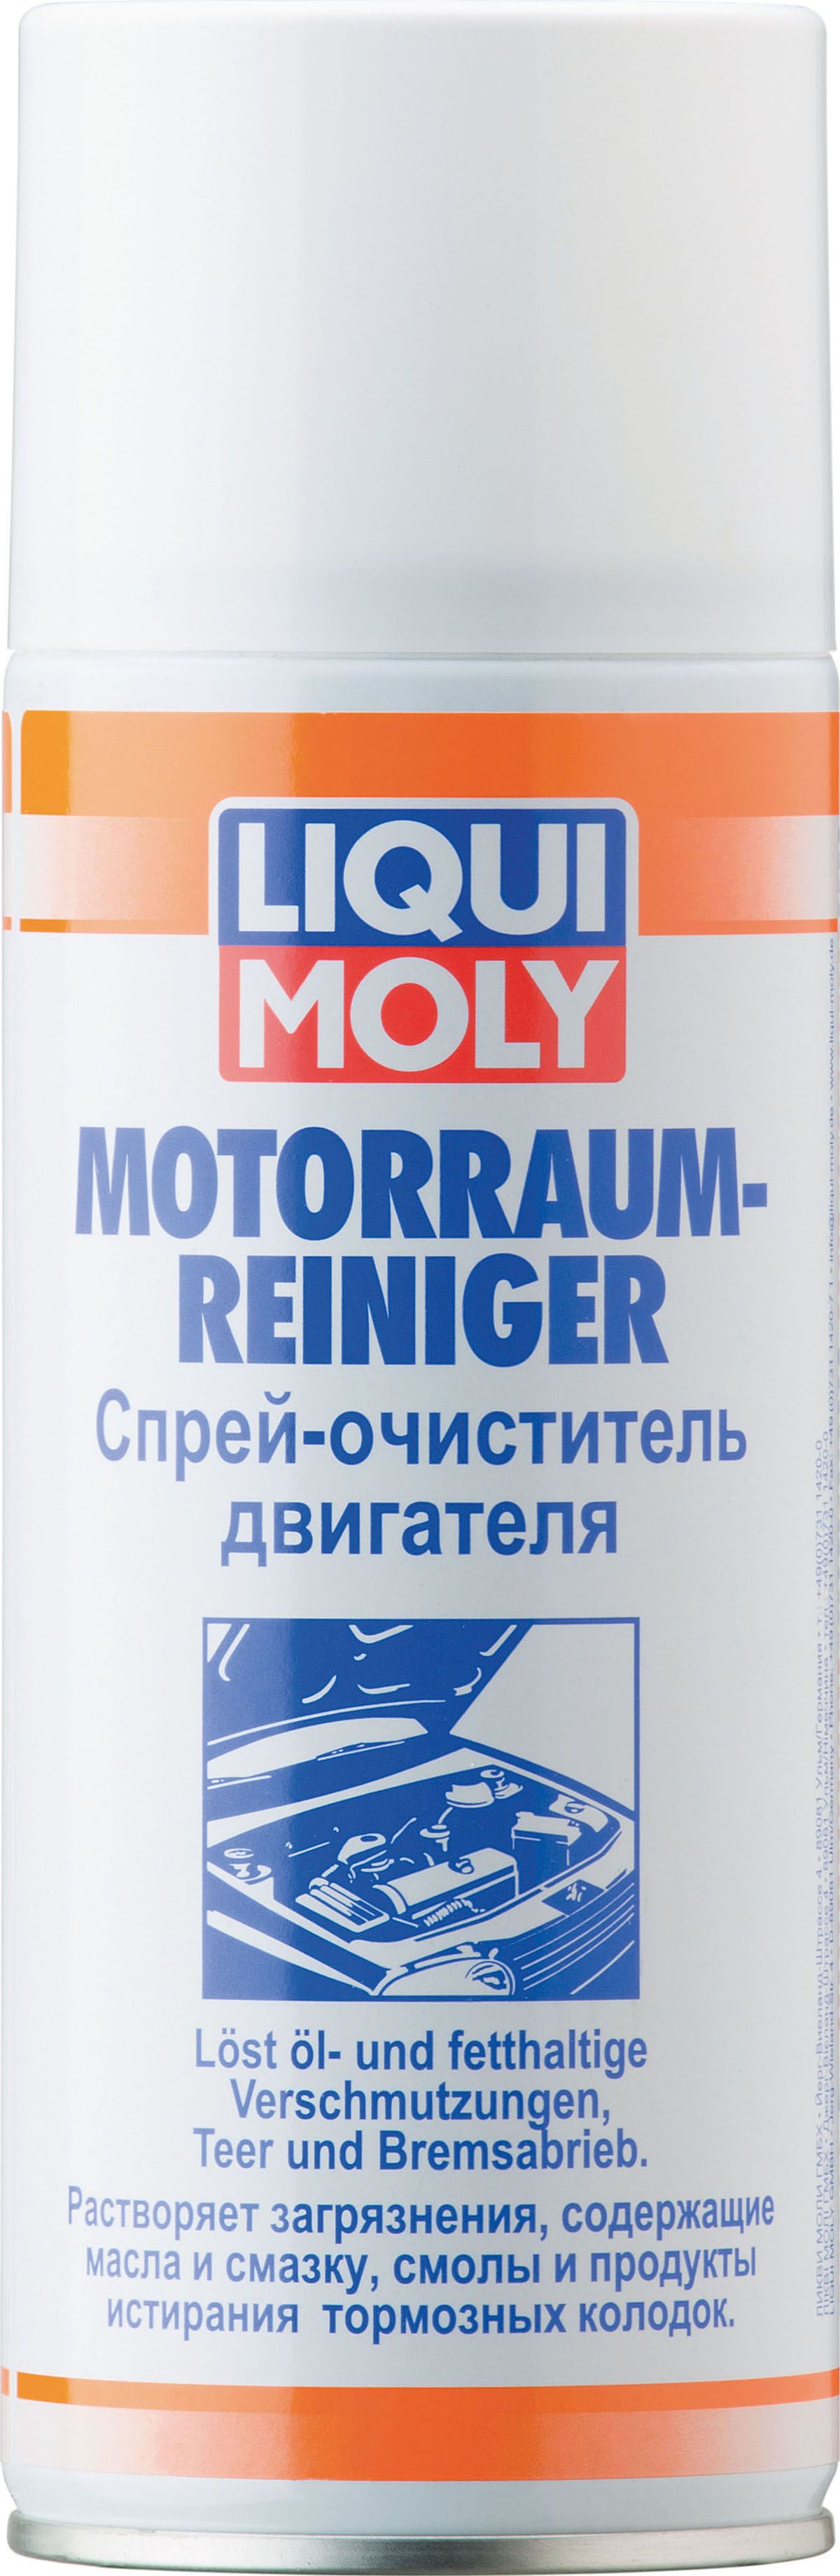 Очиститель двигателя LiquiMoly Motorram-Rein спрей 400 мл 3963